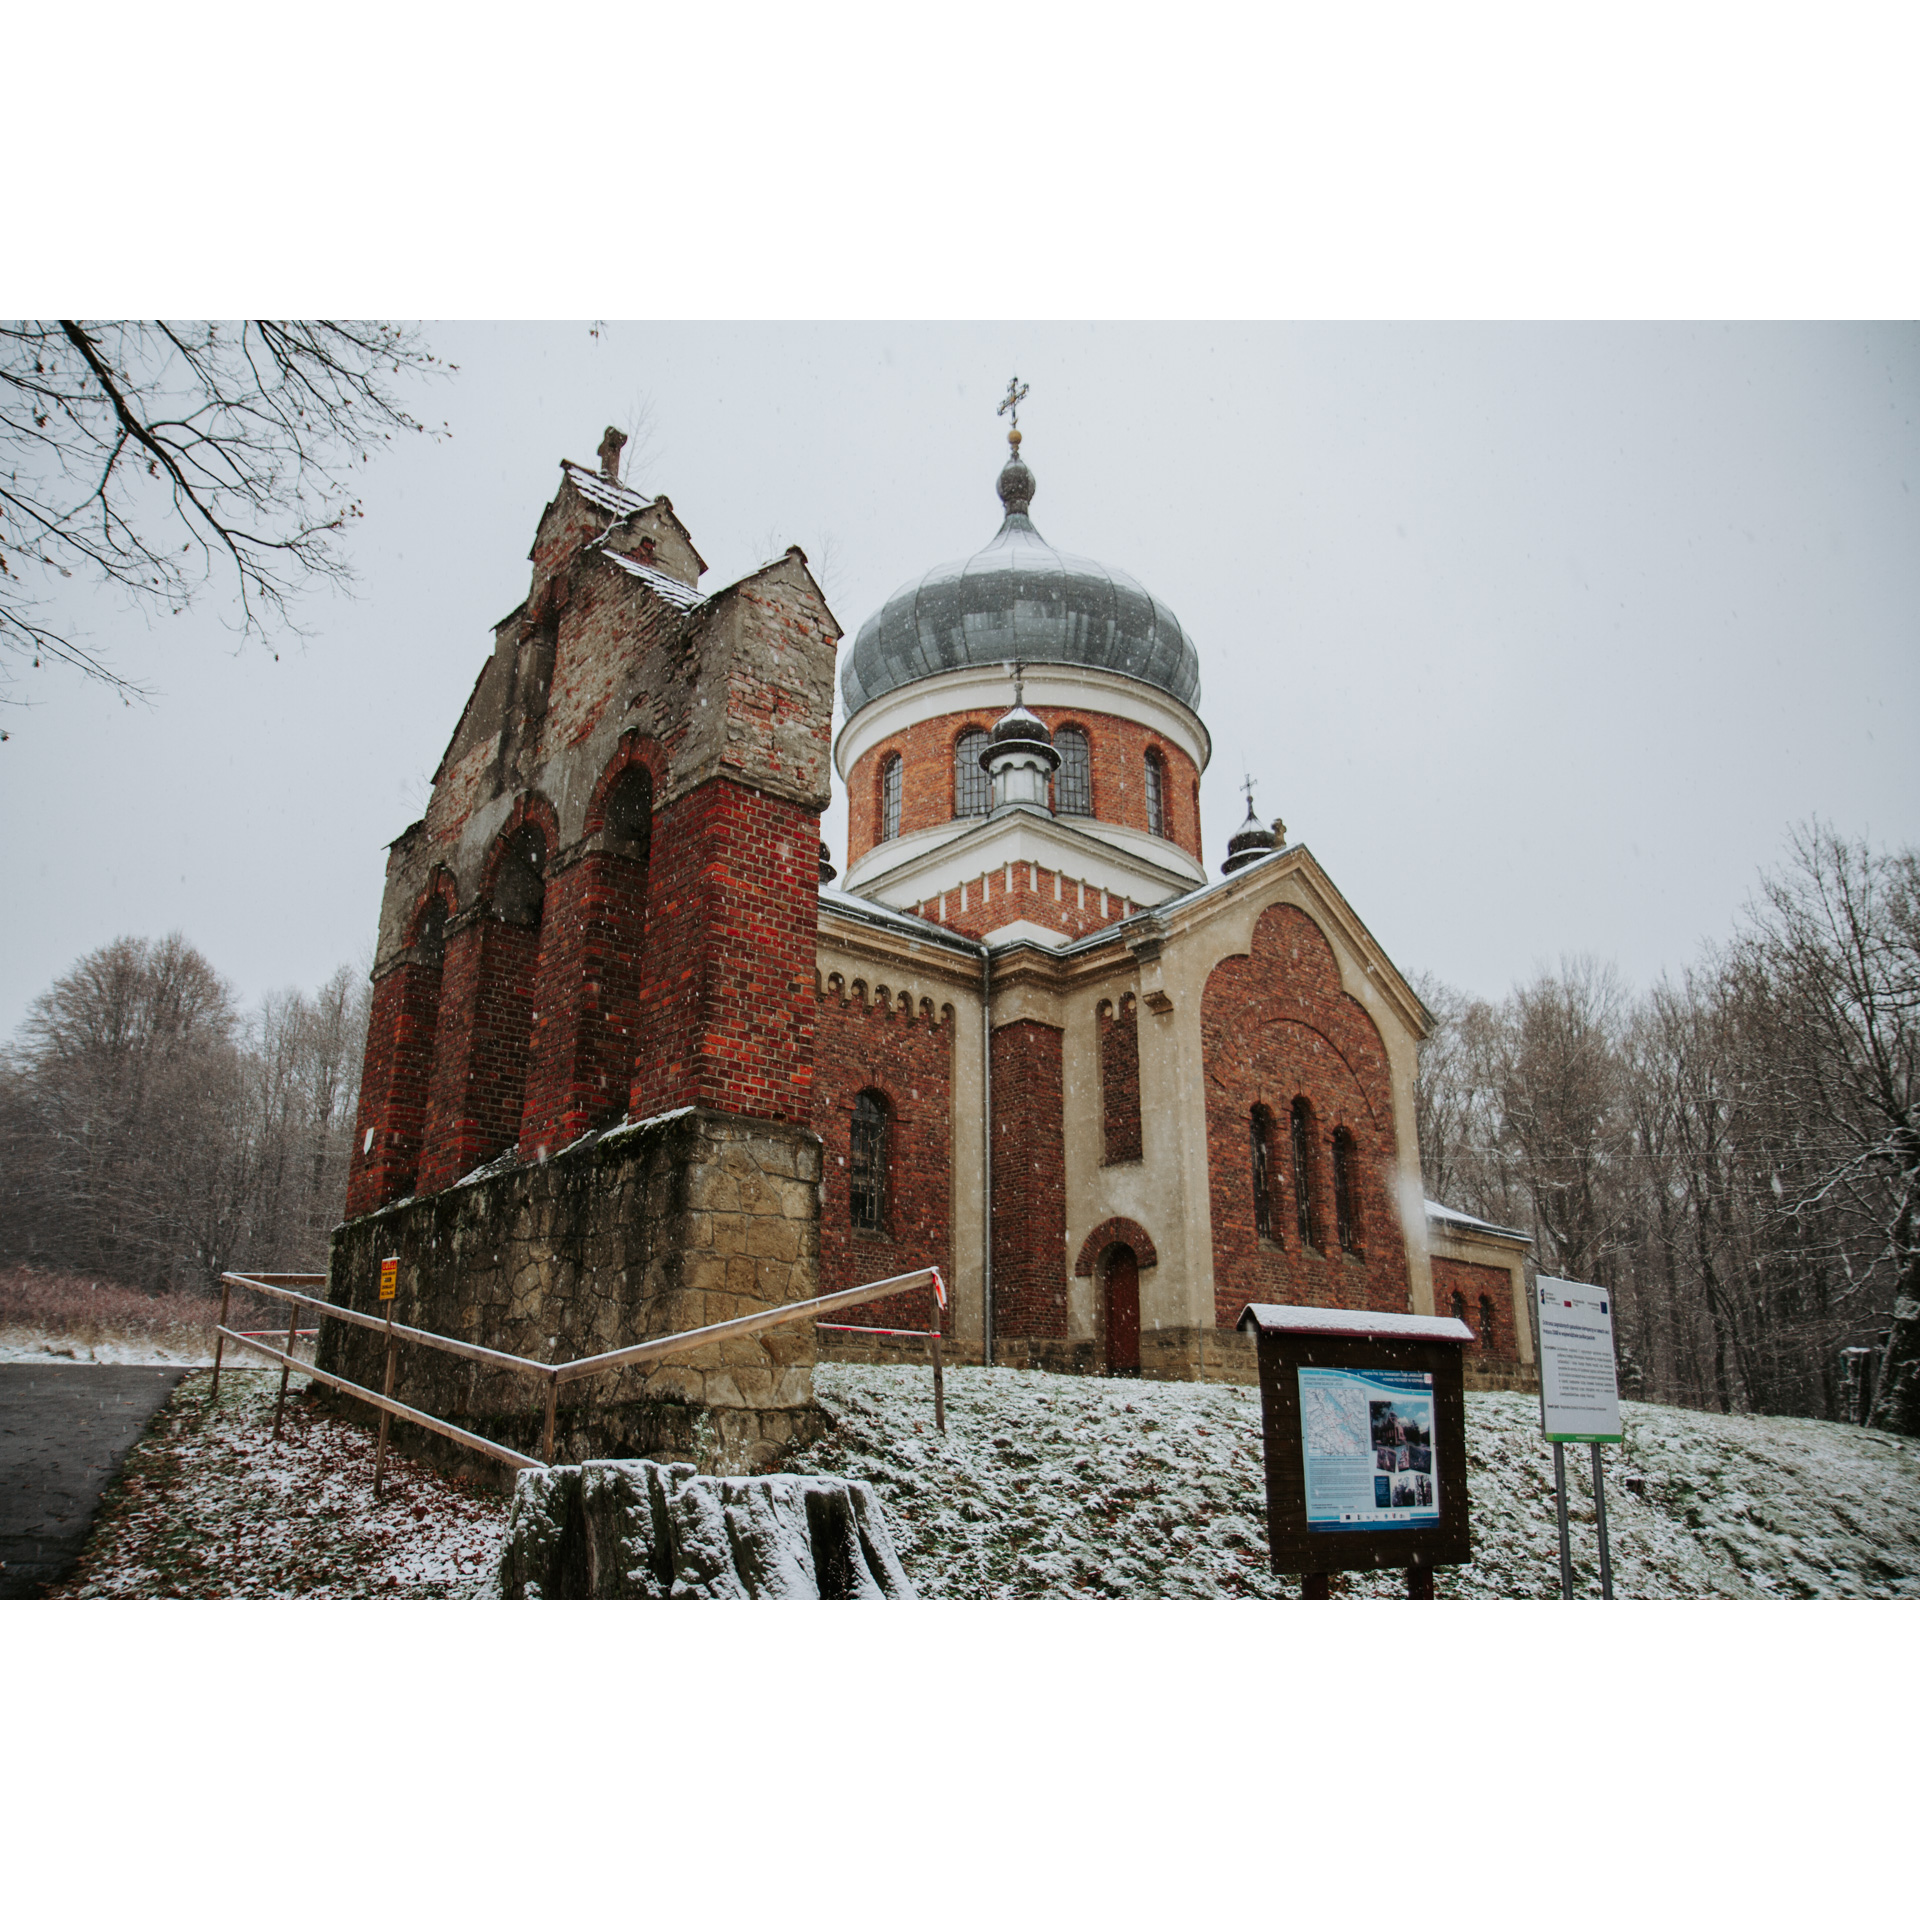 Cerkiew z czerwonej cegły ze starą dzwonnicą na ośnieżonym wzniesieniu 